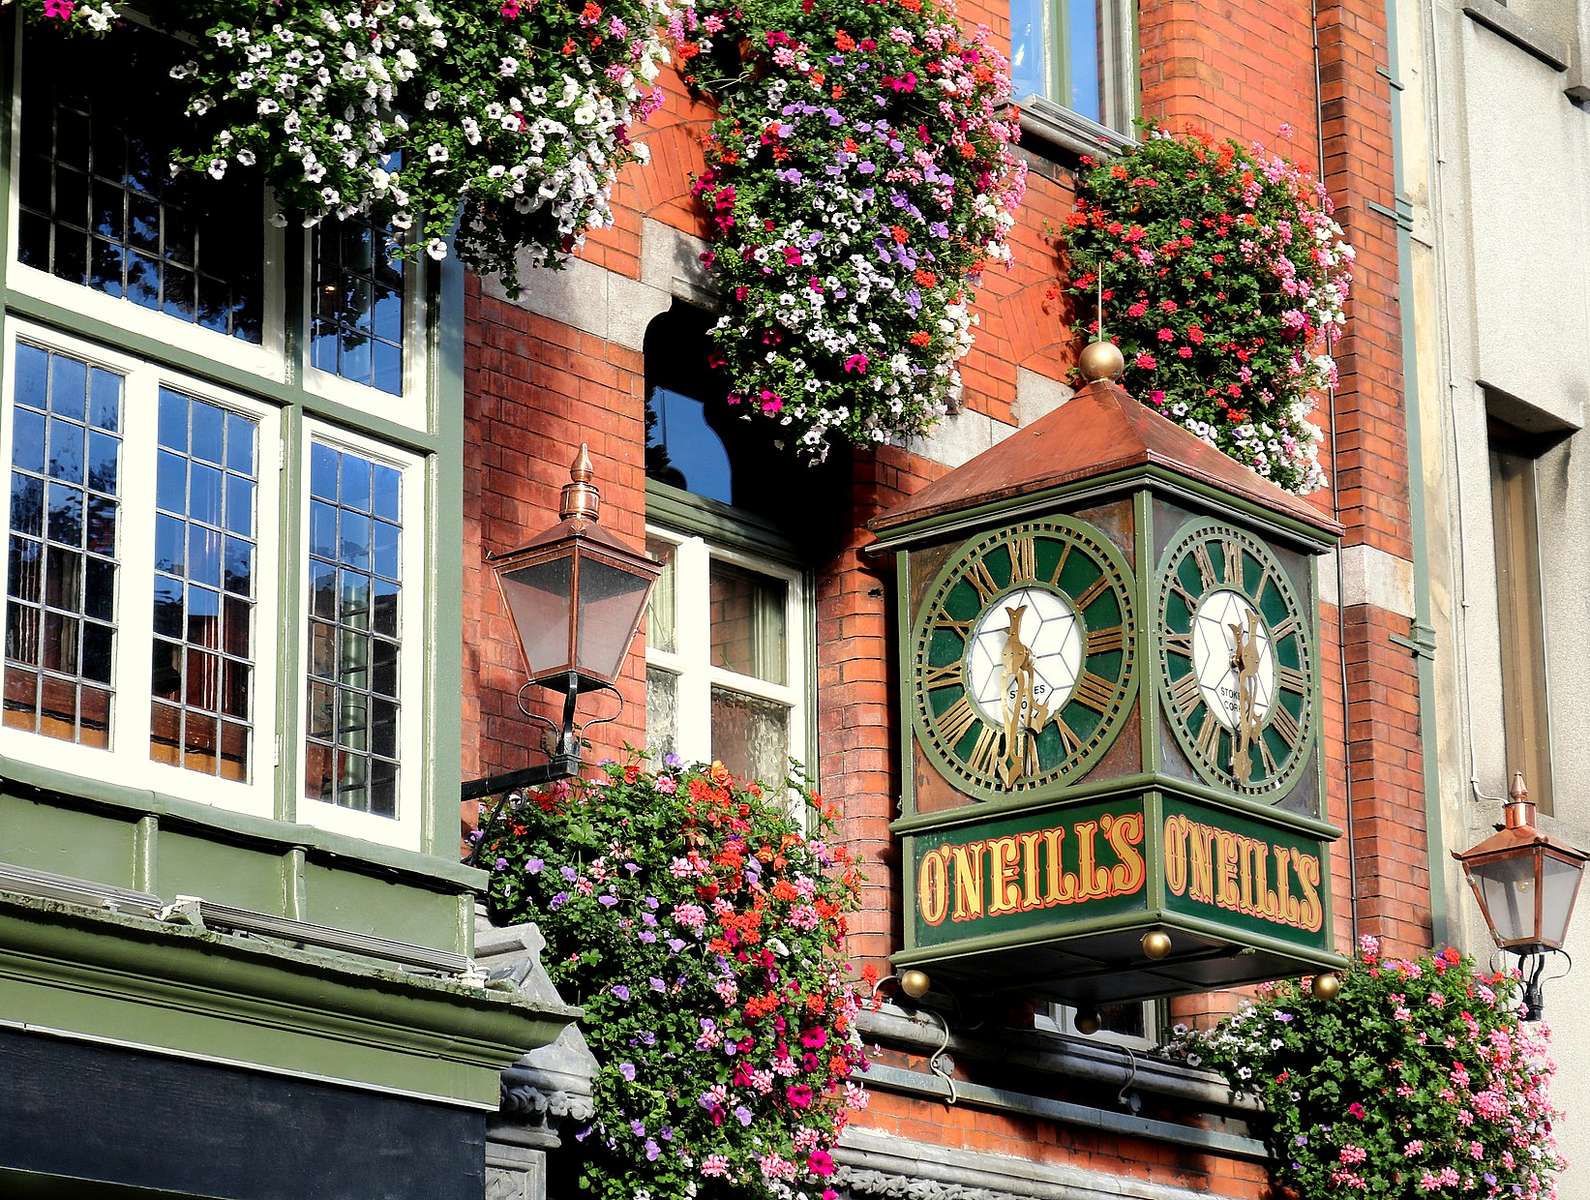 Dekoracja nad pubem O'Neills w Dublinie puzzle online